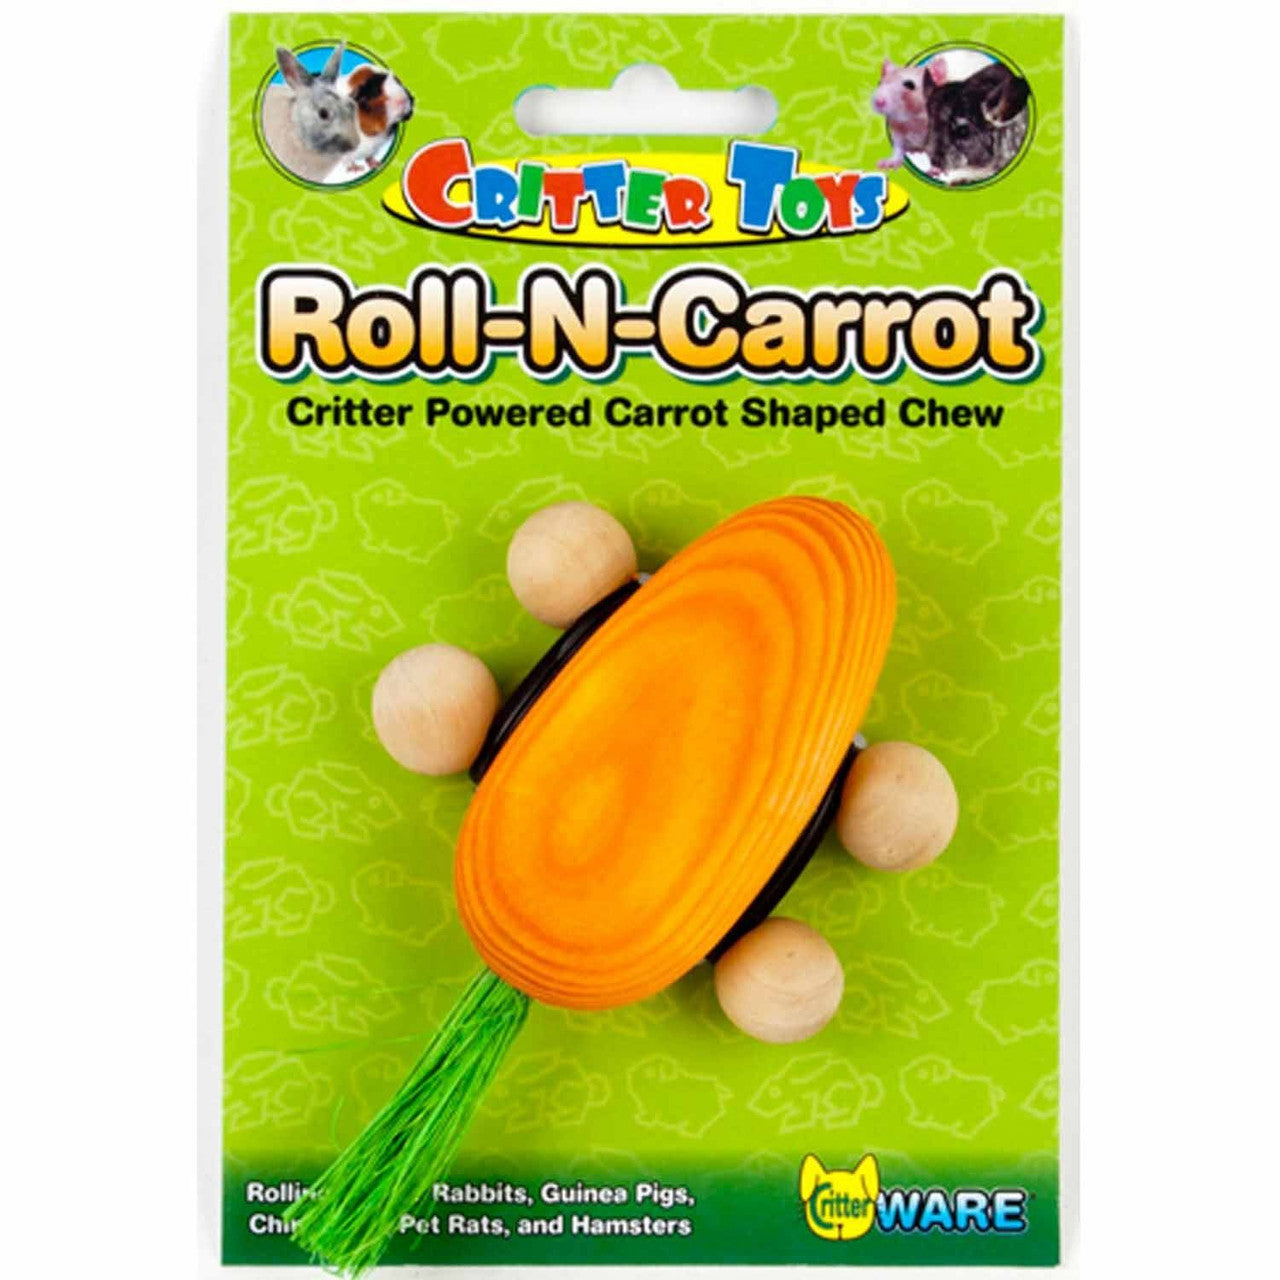 Critter Toys Roll - N - Carrot